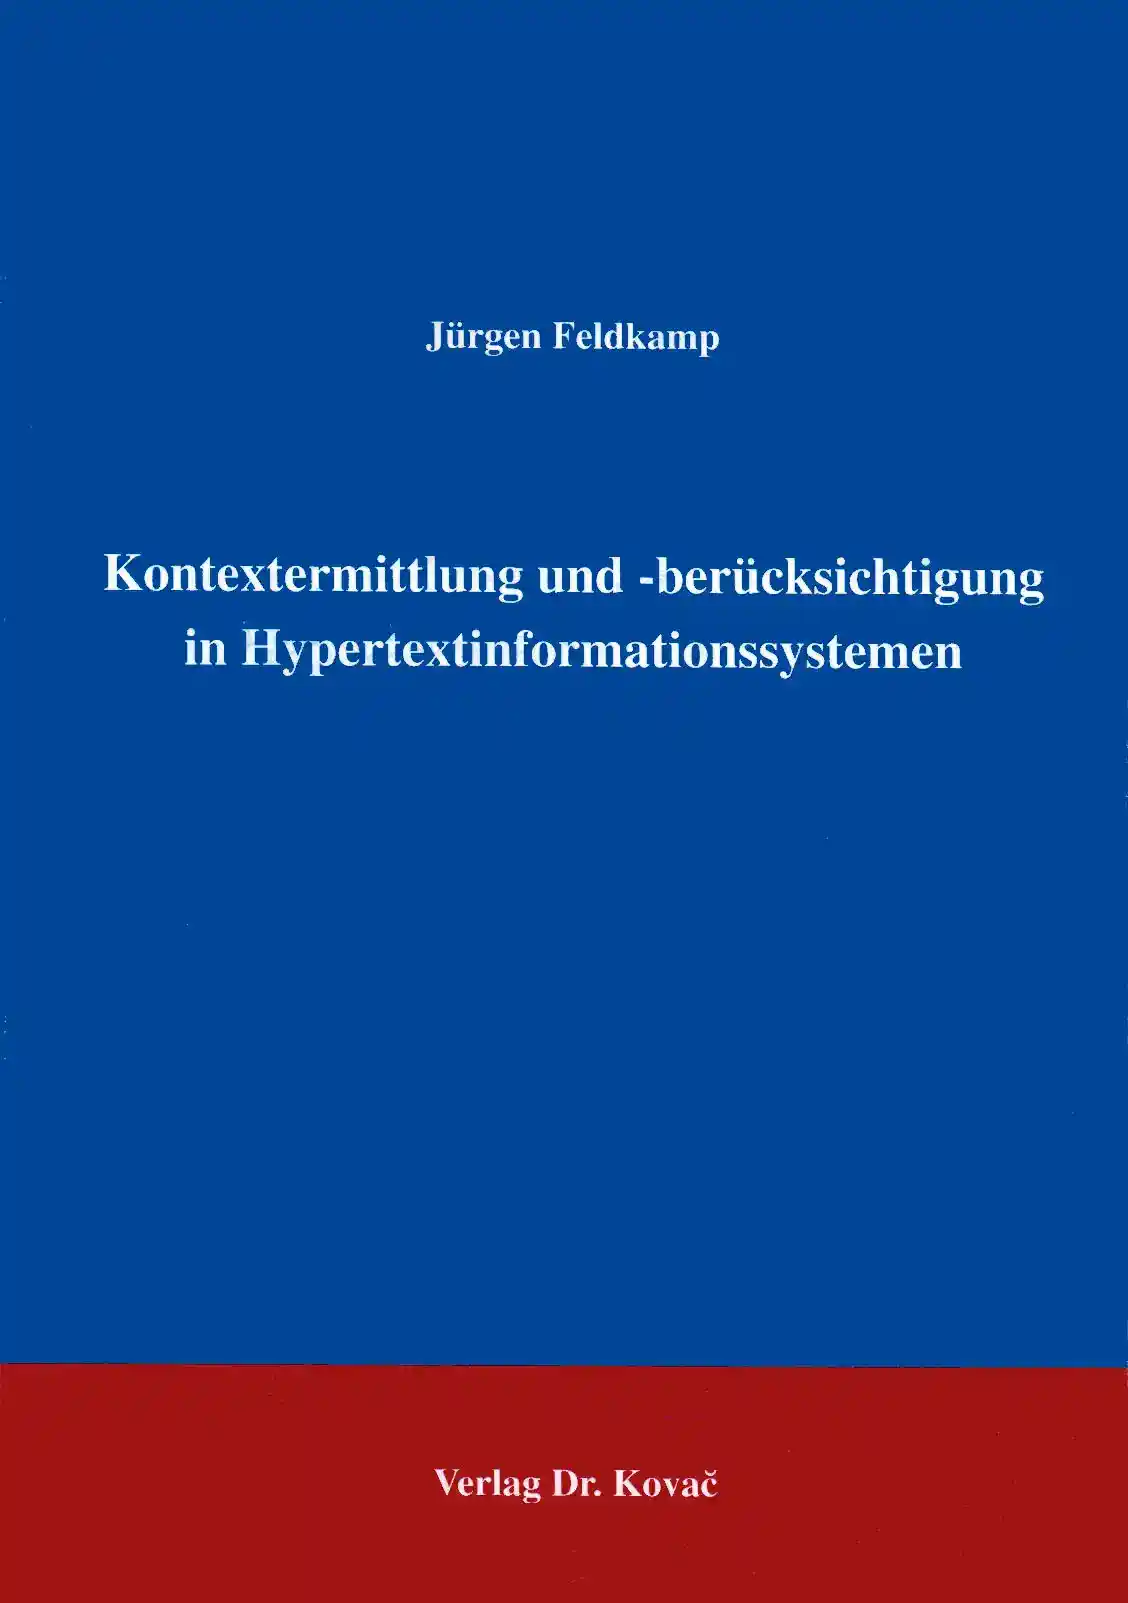 Kontextermittlung und -berücksichtigung in Hypertextinformationssystemen (Forschungsarbeit)